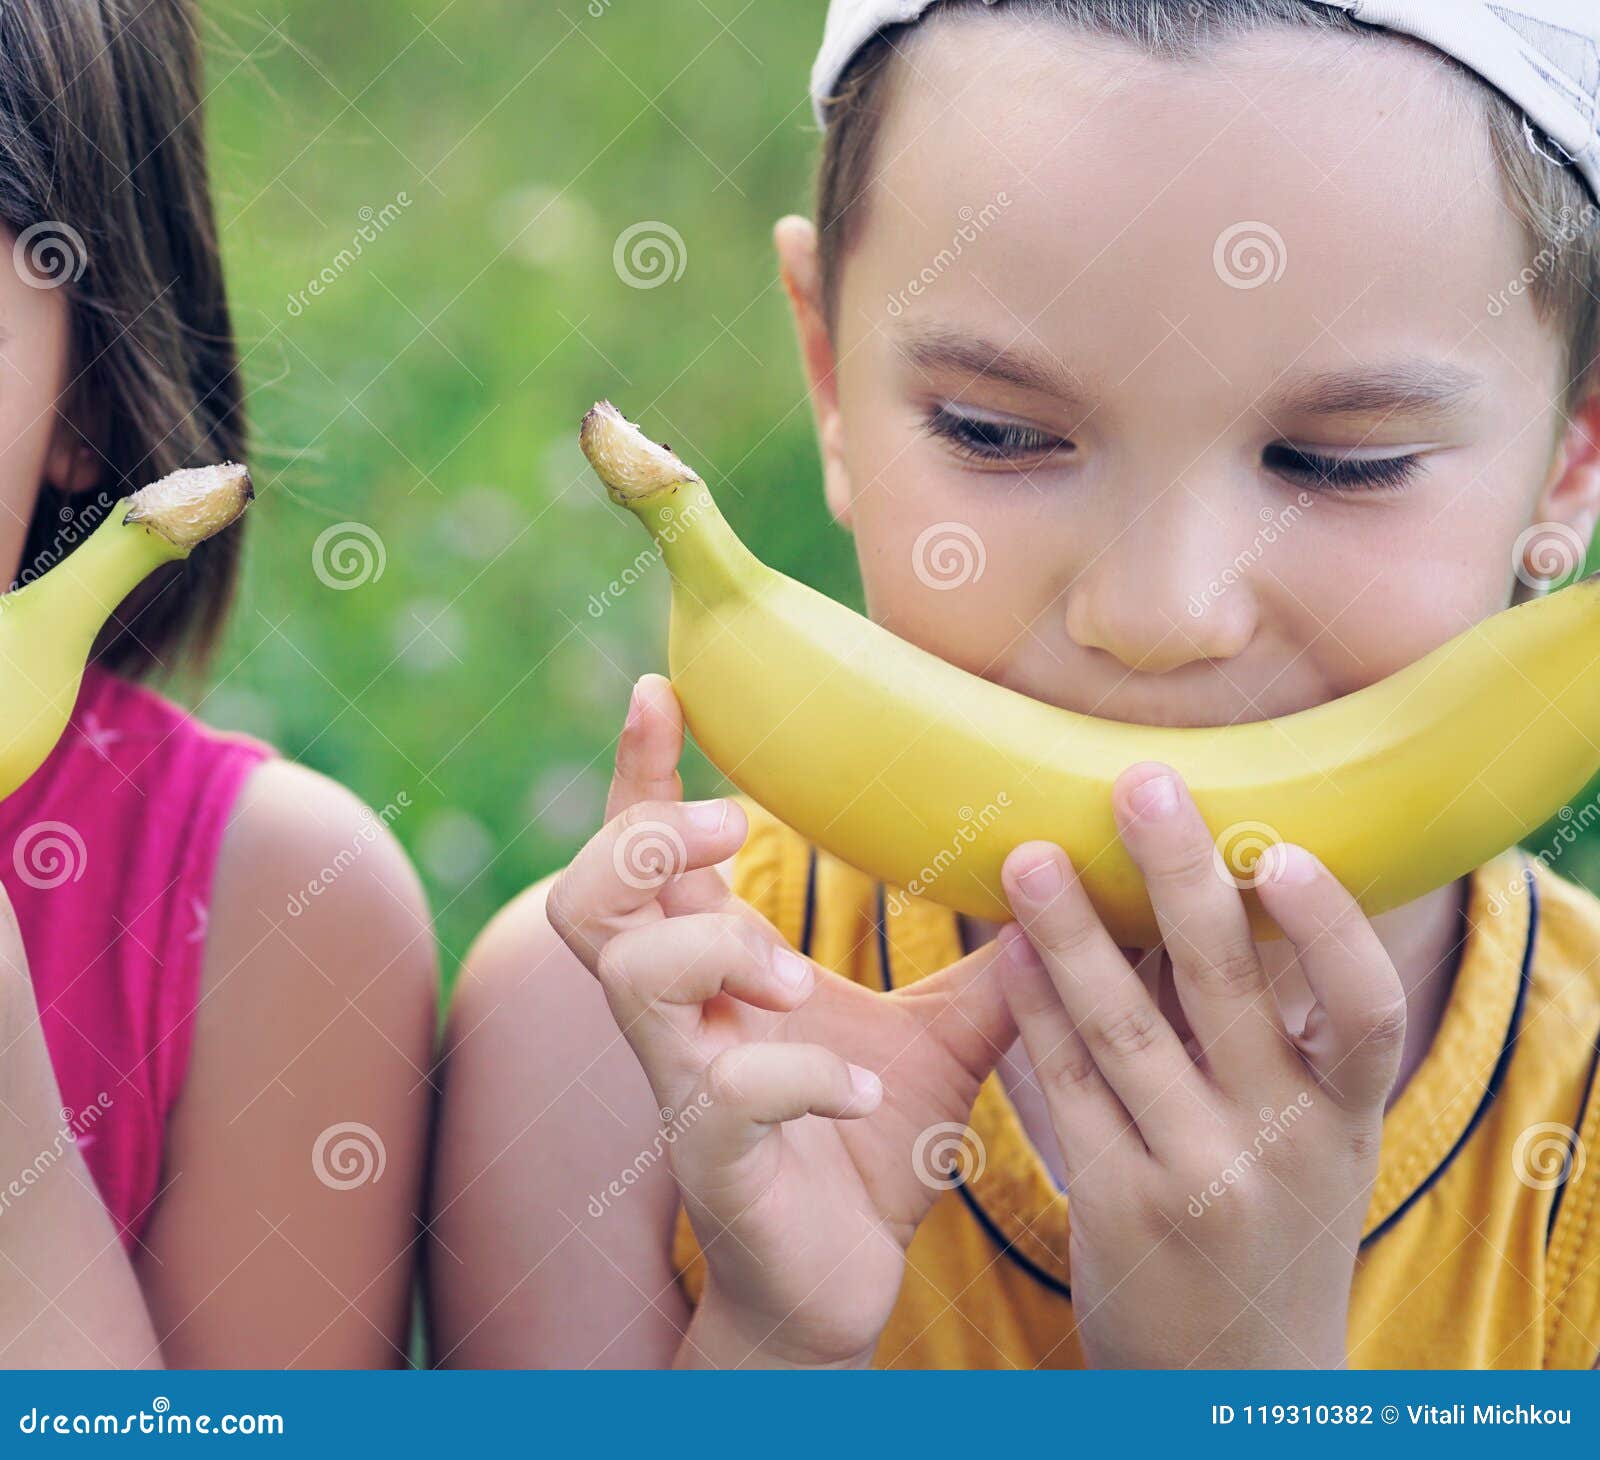 De Gezichten Van Een Mooie Jonge Kaukasische Meisje En Een Jongen Met Banaan Glimlachen Op